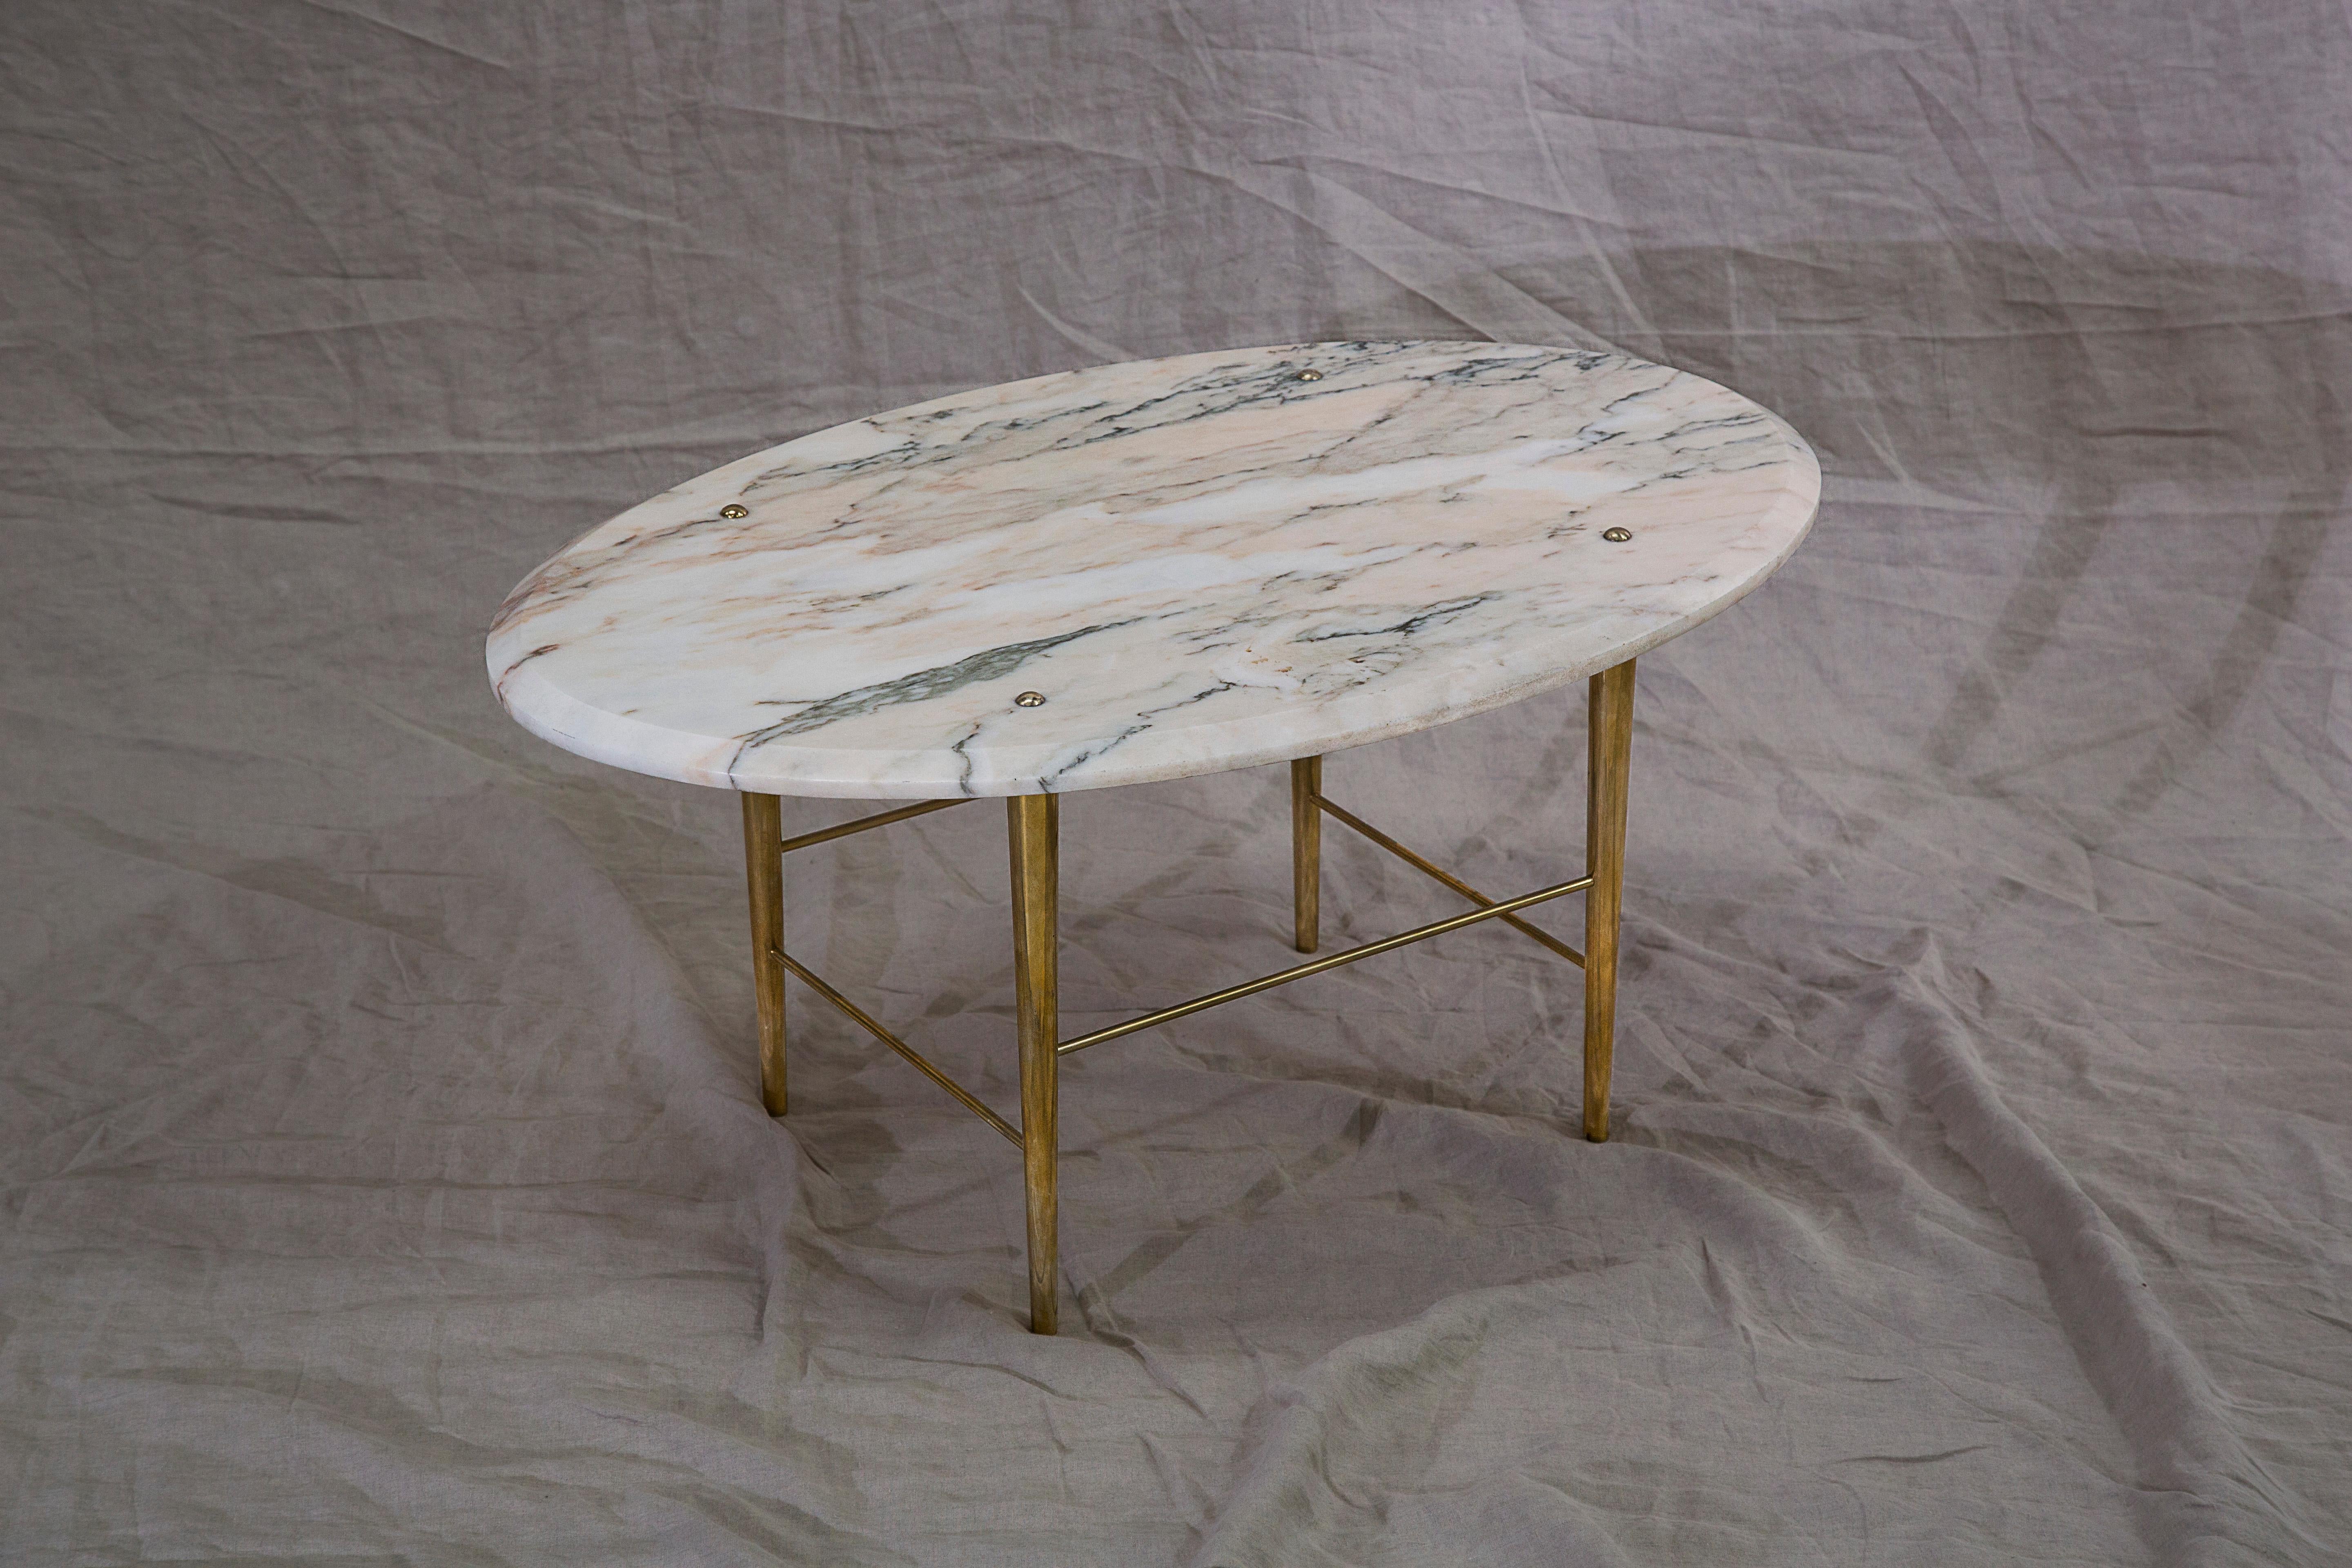 Table basse en marbre portugais et laiton poli. Fabriqué à la main sur commande dans le nord de l'Angleterre.

Dimensions : 1000 mm (L) x 640 mm (L) x 400 mm (H)

Dimensions et finitions sur mesure disponibles.